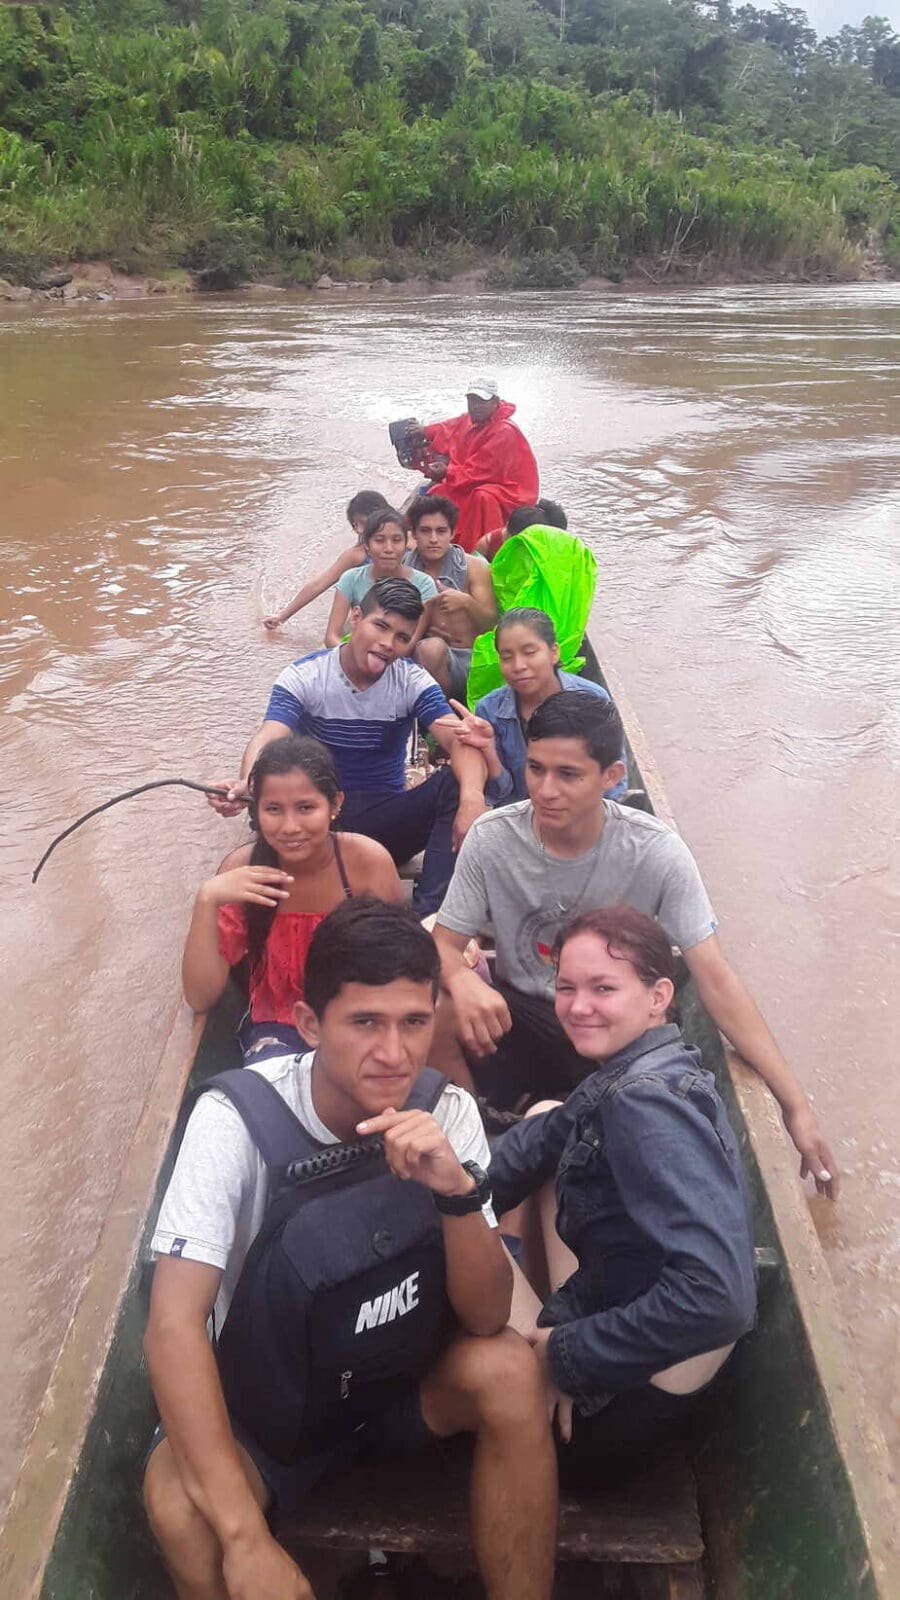 Met de boot naar school in Peru